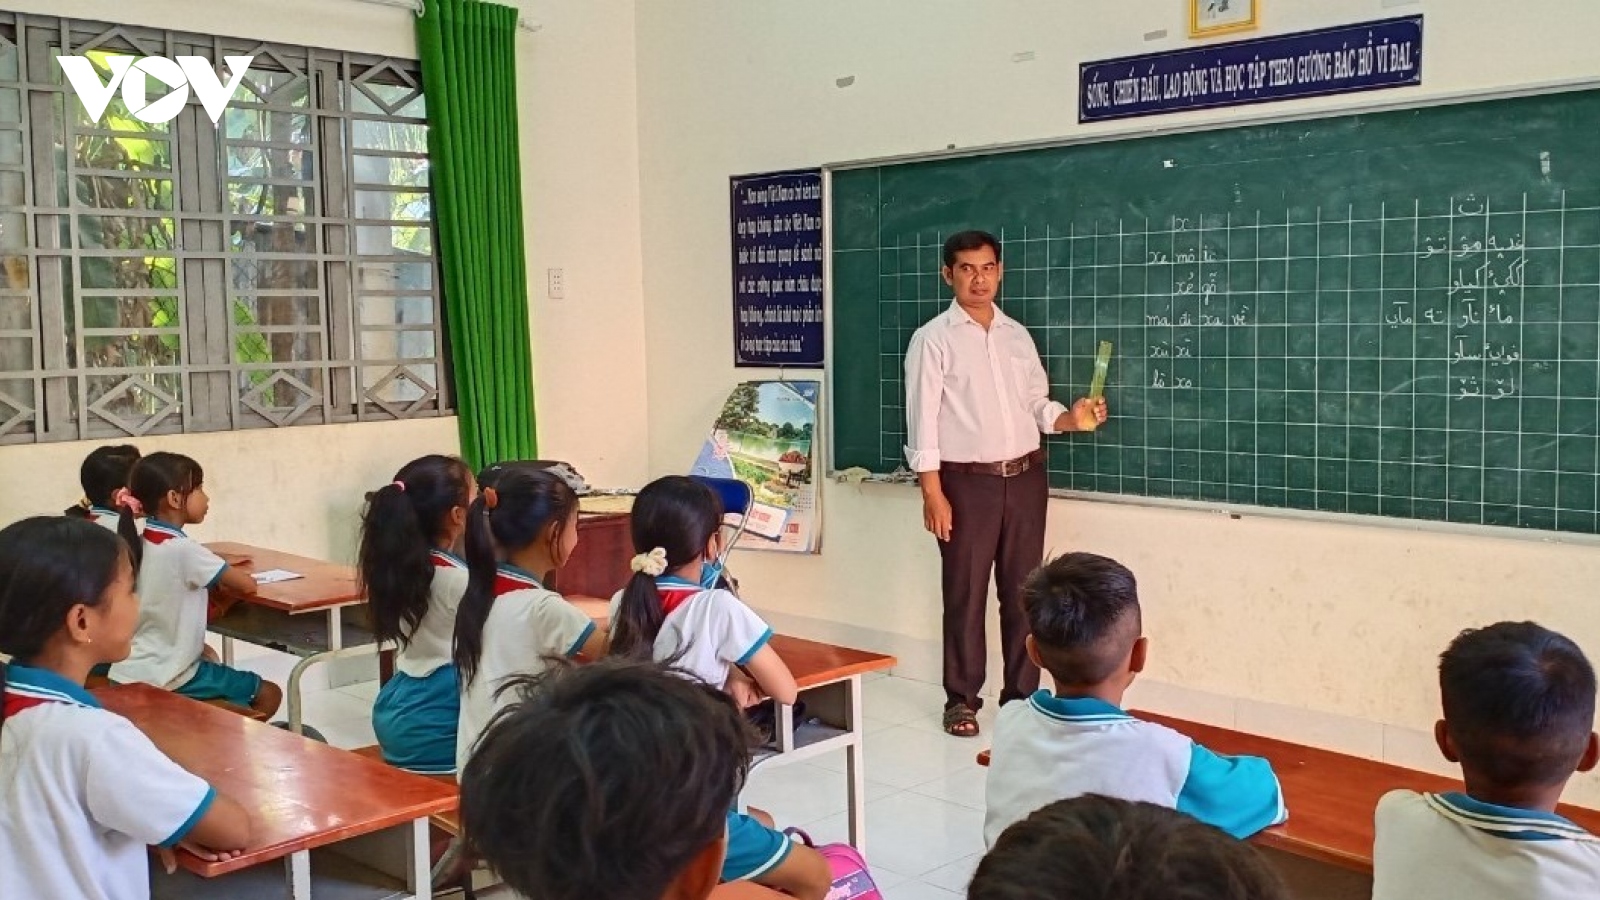 Thầy giáo Chăm đưa chữ Chăm đến với học sinh Chăm